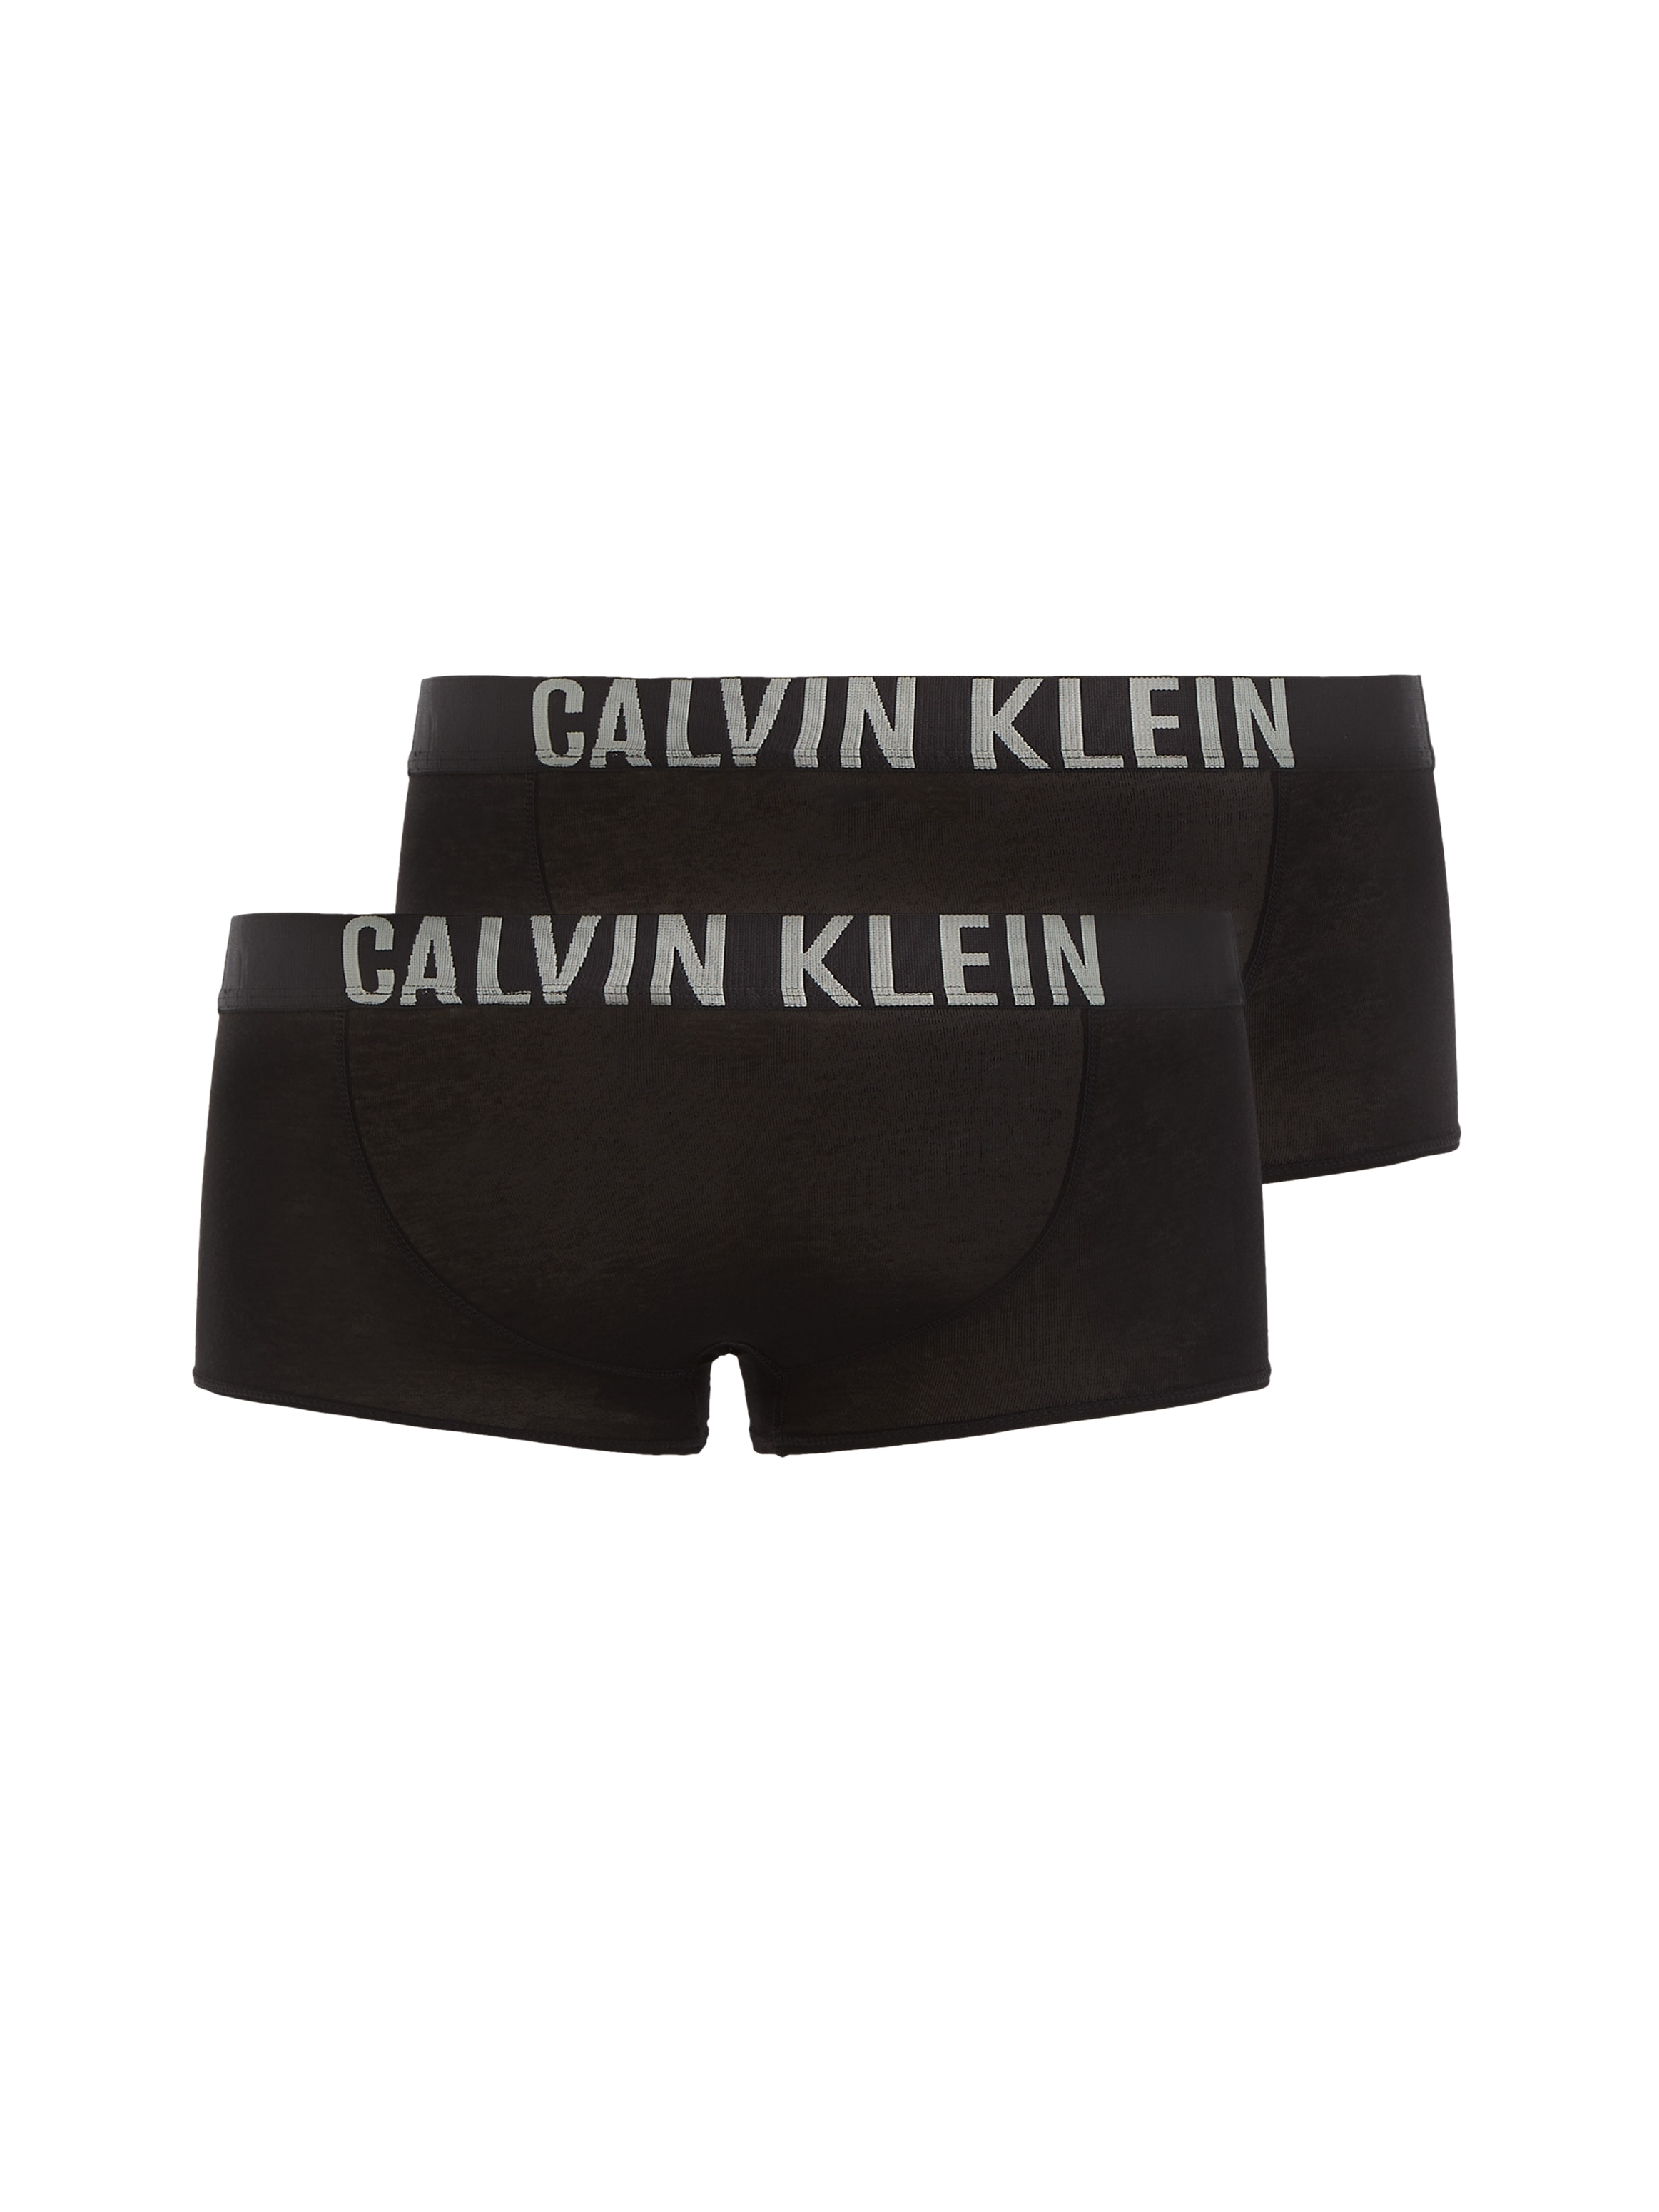 Calvin Klein Underwear Calvin KLEIN Trunk »Intenese Power« (2...